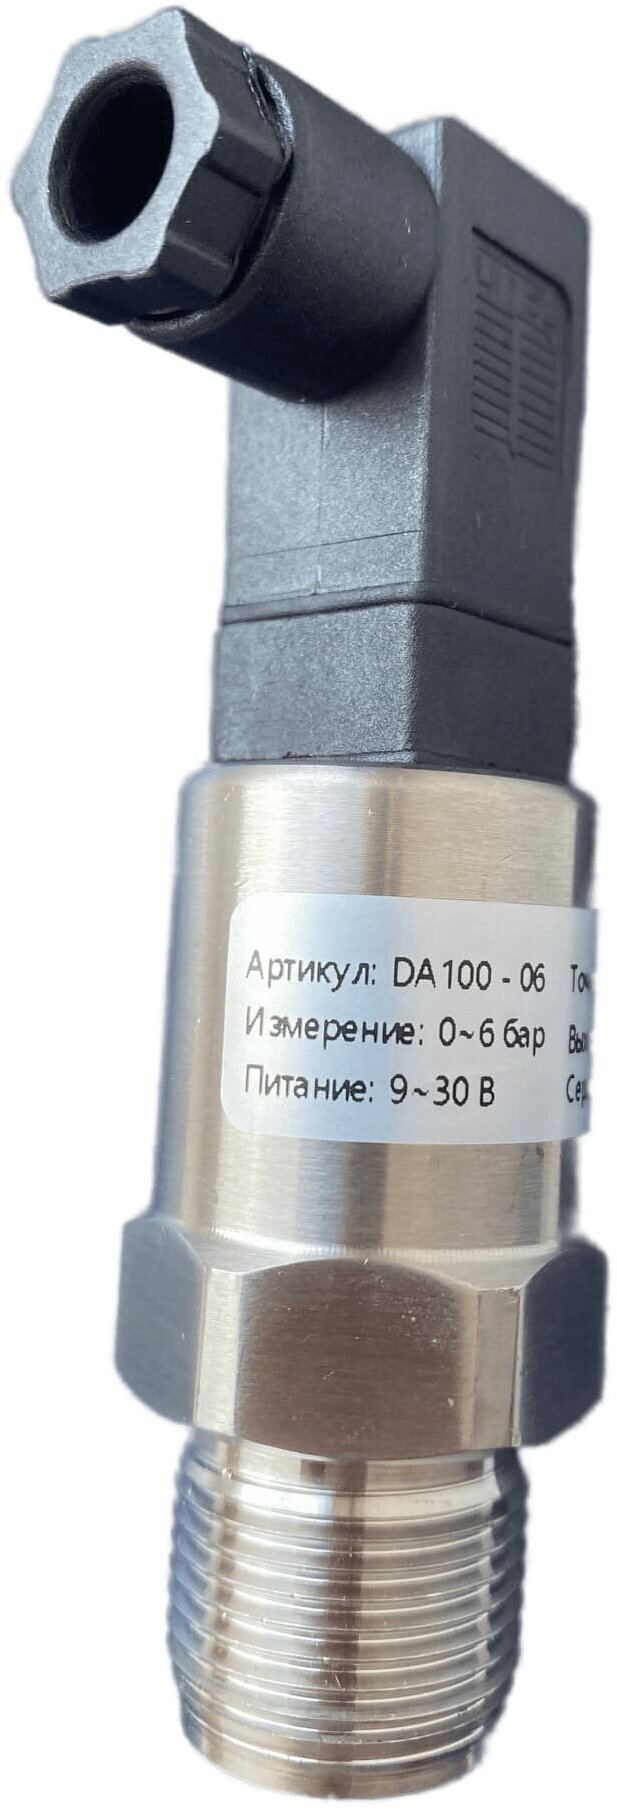 DA100-06 Датчик давления 24В с выходом 4-20мА резьба М20х1.5 давление 0-6 бар